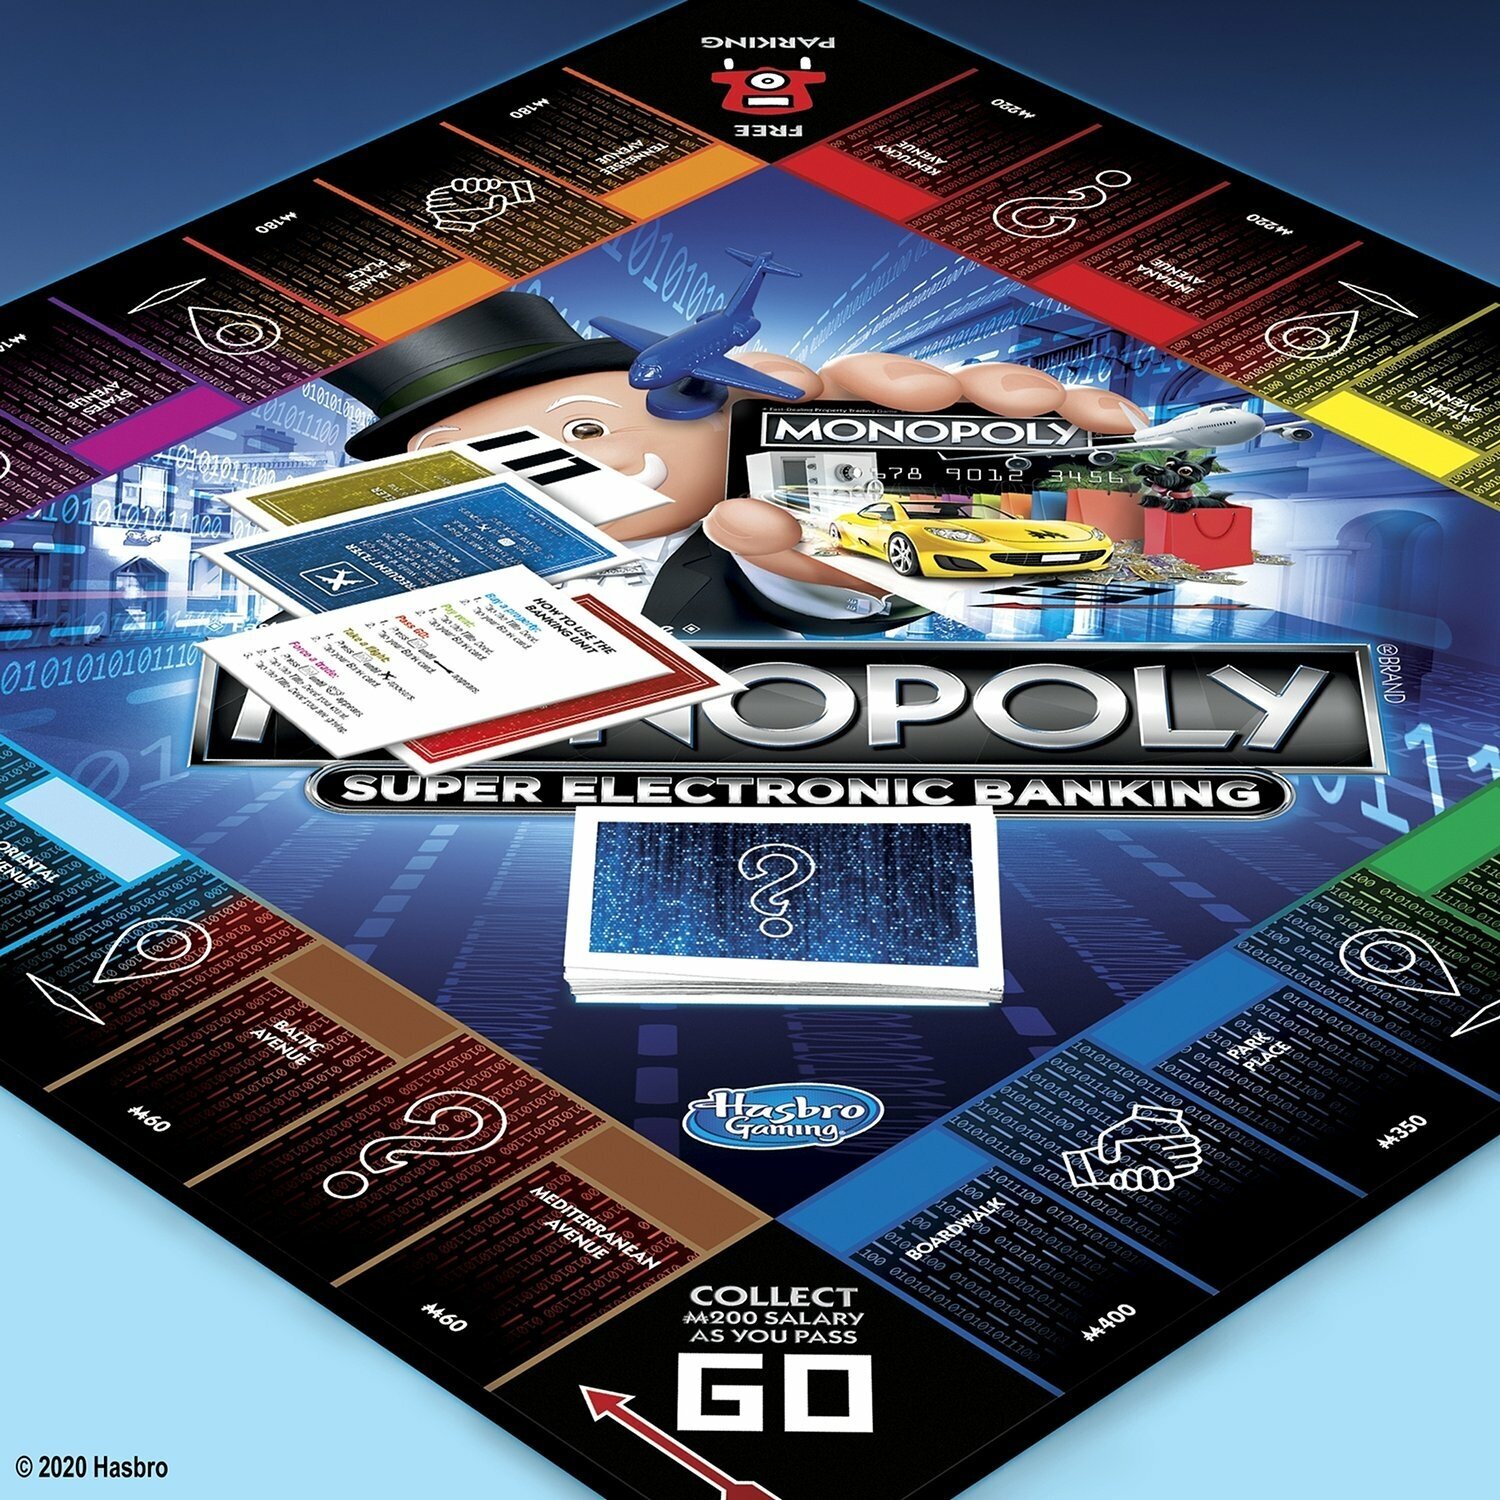 Настольная игра Hasbro Monopoly "Бонусы без границ" - фото №14